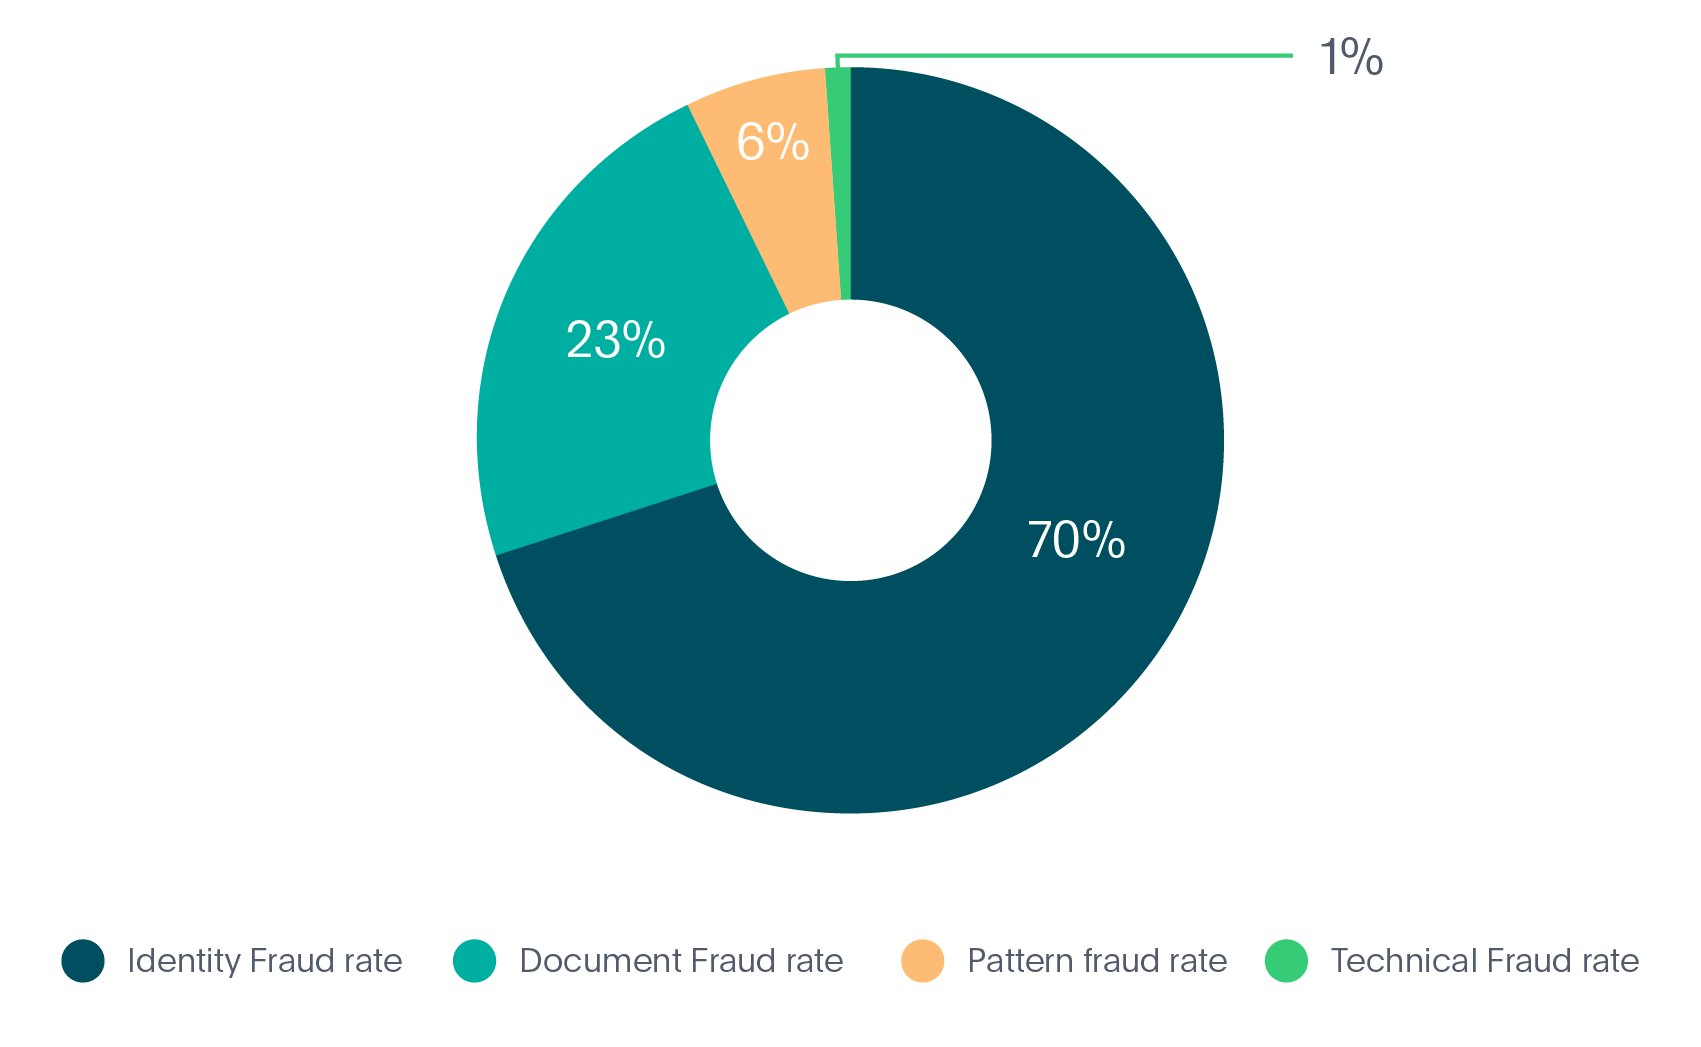 Identity fraud types in Fintech industry in 2020